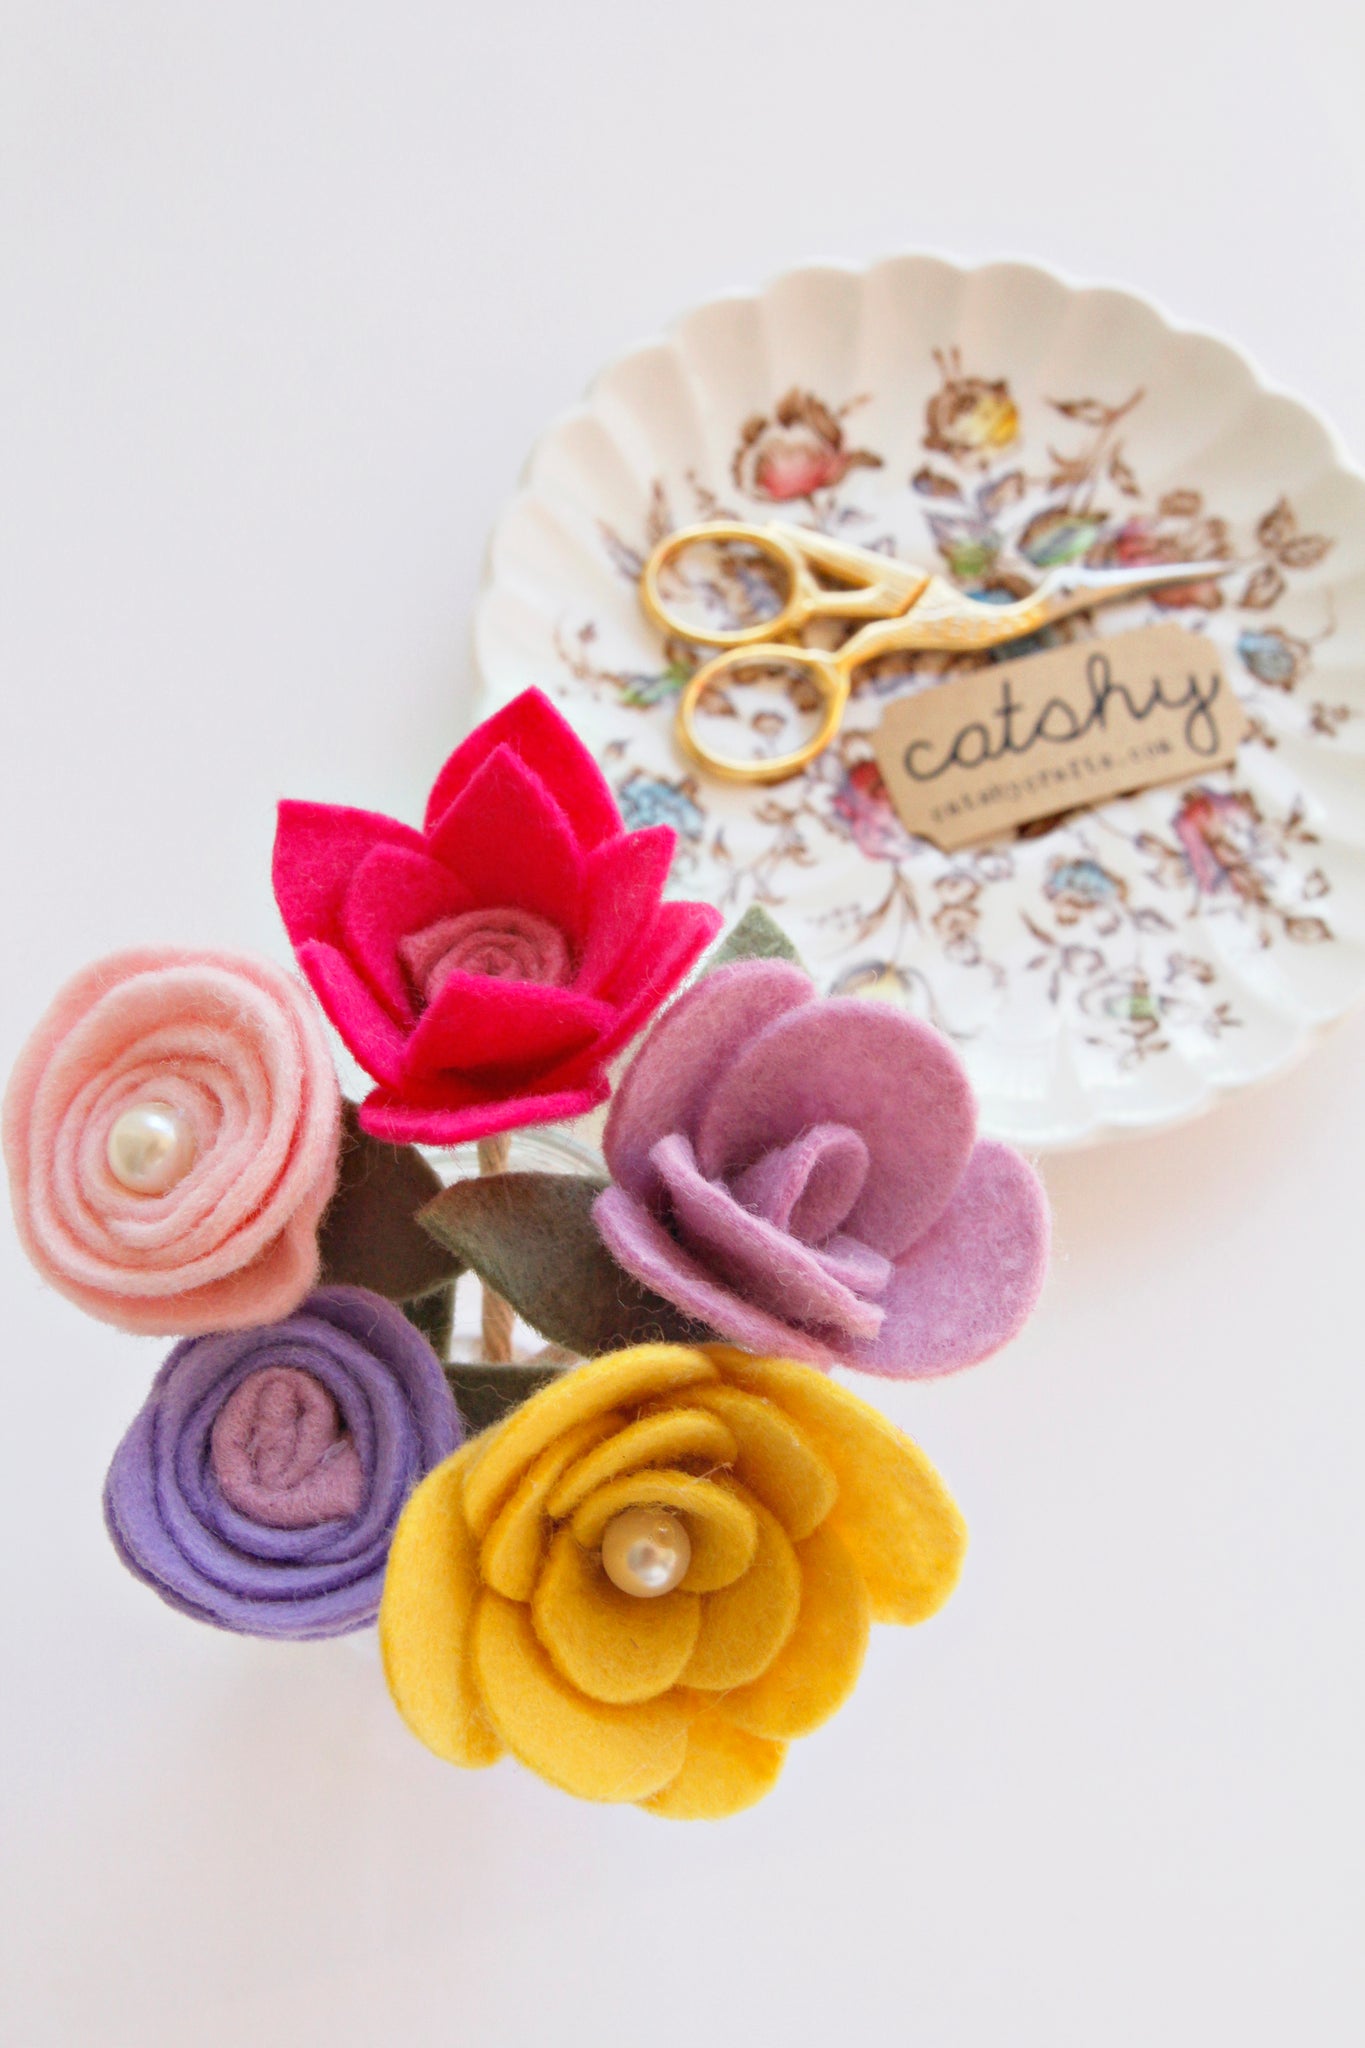 Felt Flower Bouquet – Catshy Crafts